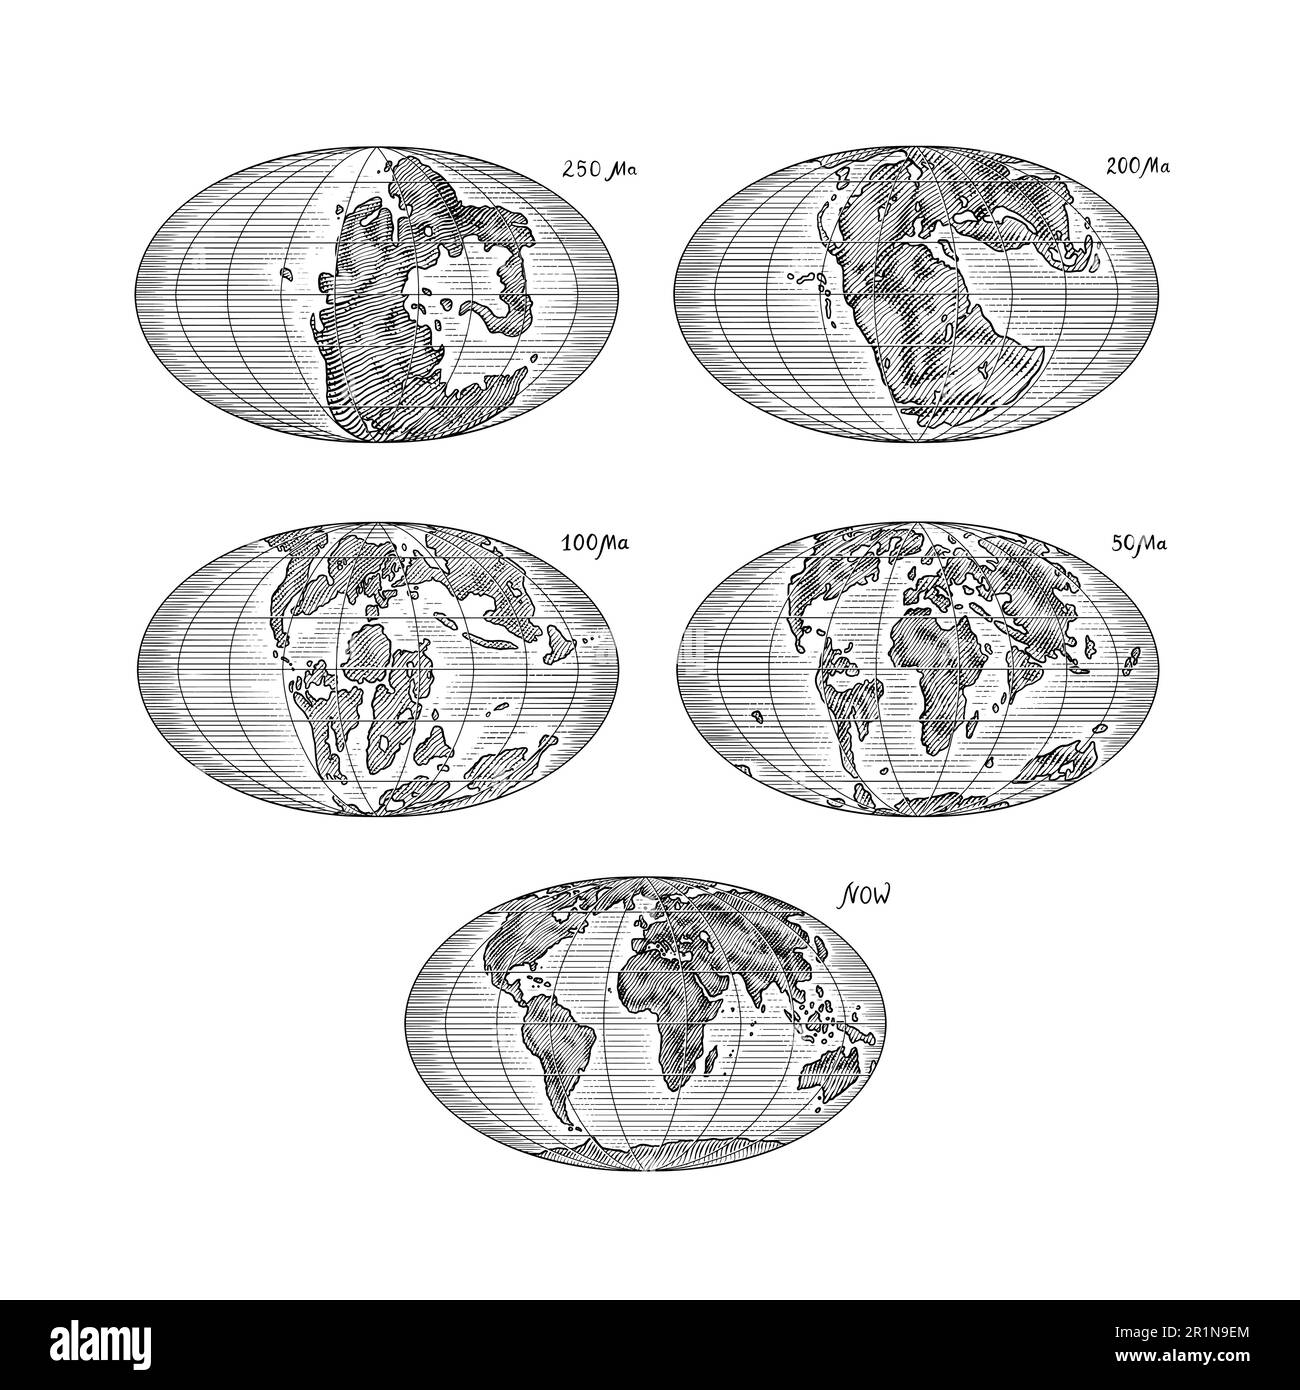 Plattentektonik auf dem Planeten Erde. Pangaea. Kontinentale Drift. Superkontinent bei 250 Ma. Die Ära der Dinosaurier. Jurassezeit. Mesozoisch. Handgezeichnet Stock Vektor